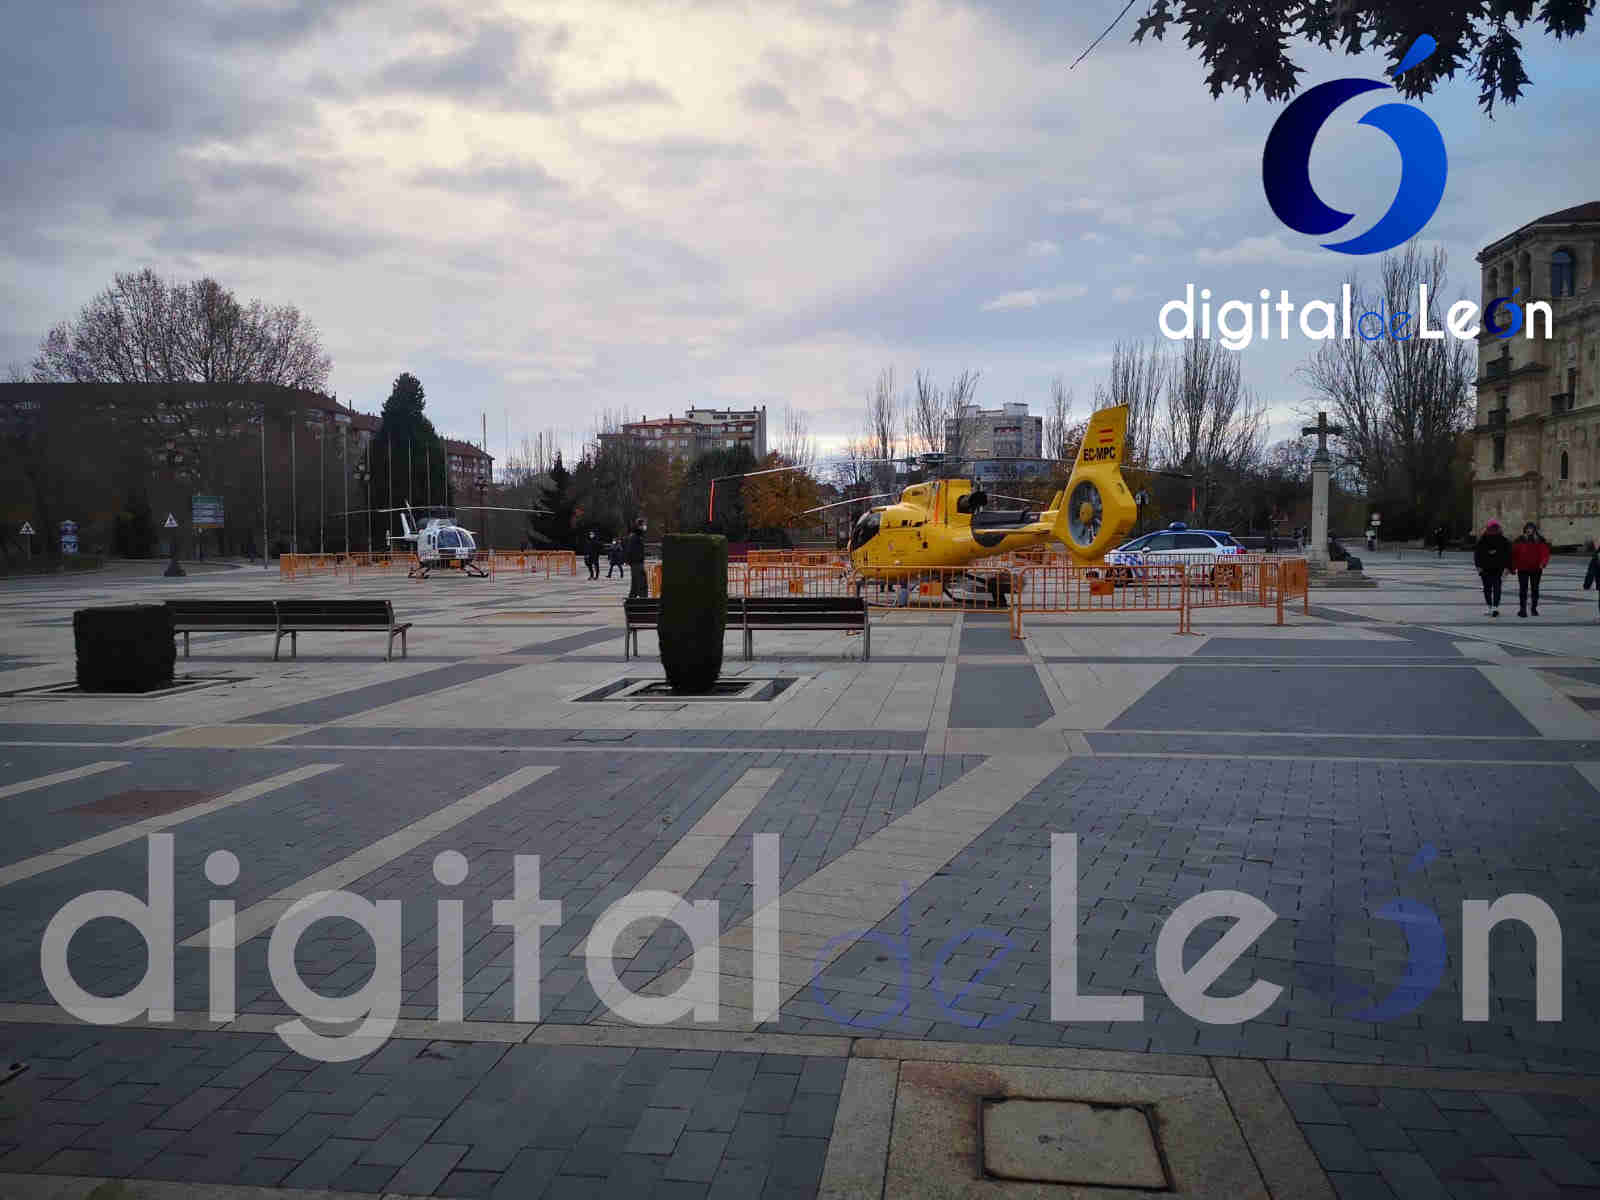 exhibición en león vehículos oficiales- Digital de León